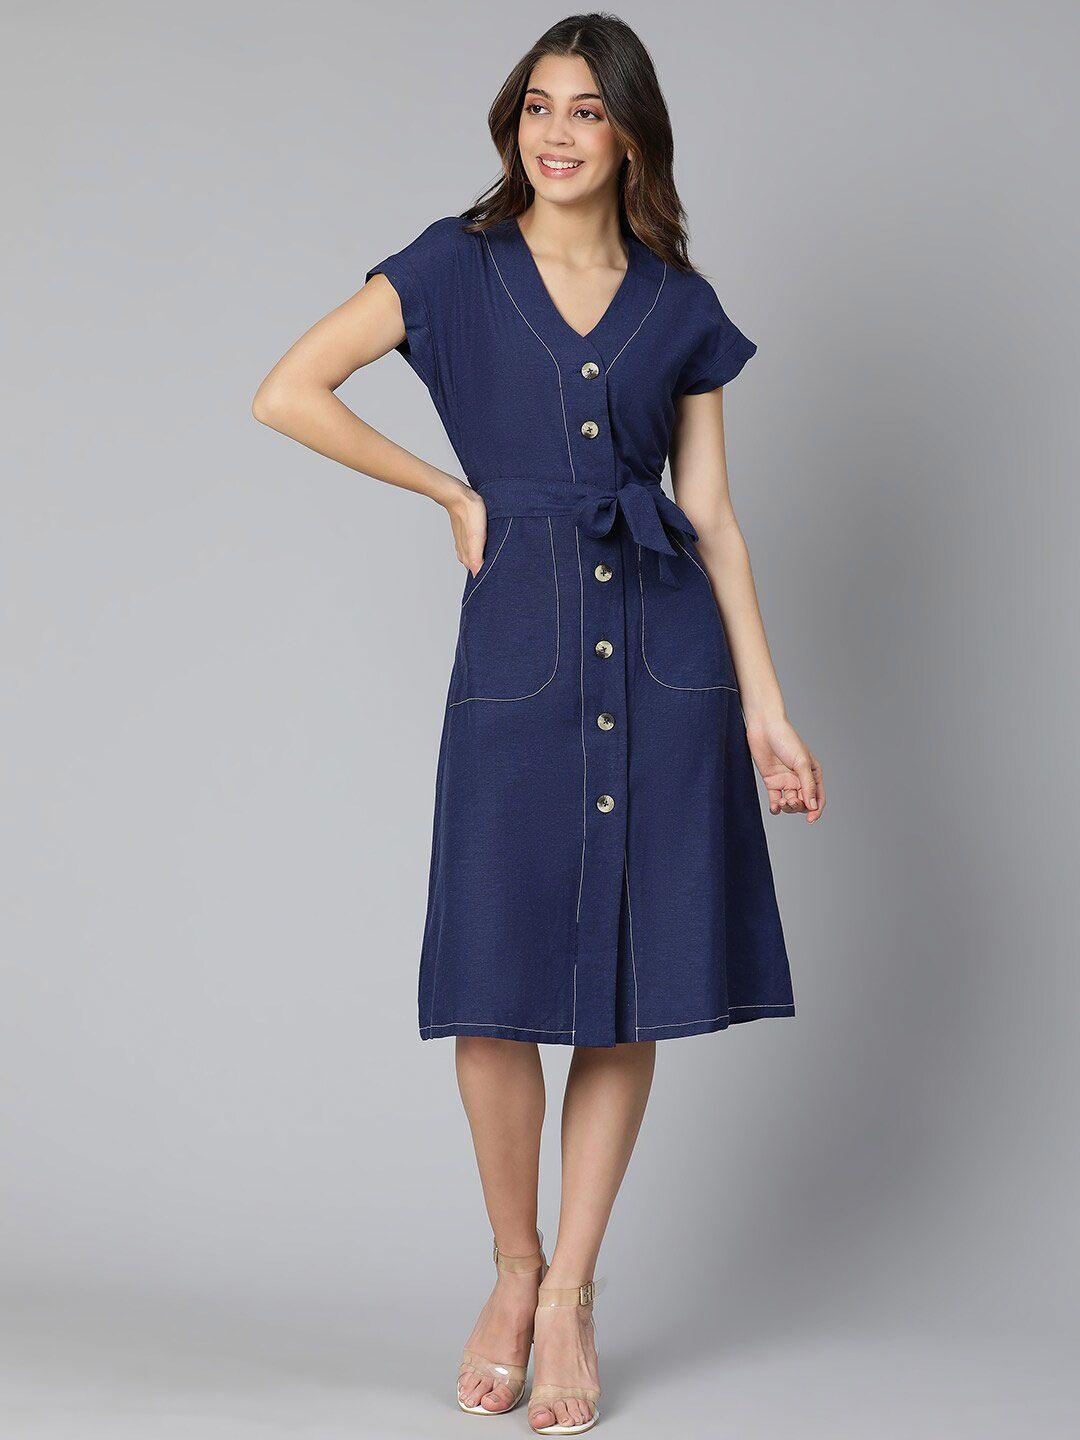 Oxolloxo Navy Blue A-Line Dress